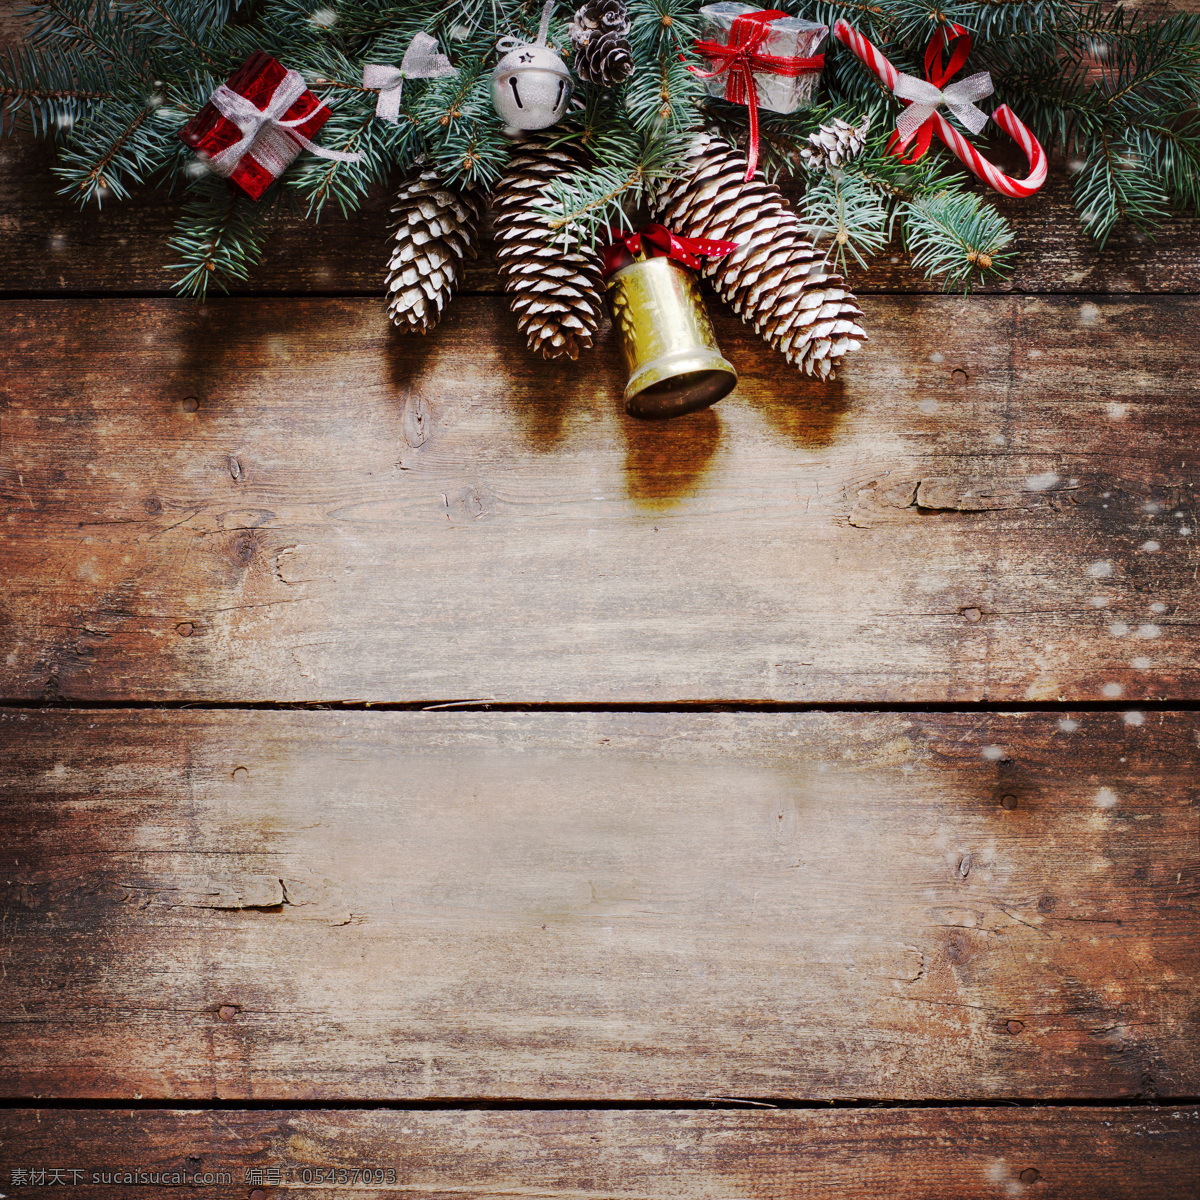 圣诞节 铃铛 木板 背景 木板背景 木纹背景 礼物 礼包 圣诞节饰品 圣诞节背景 节日庆典 生活百科 黑色